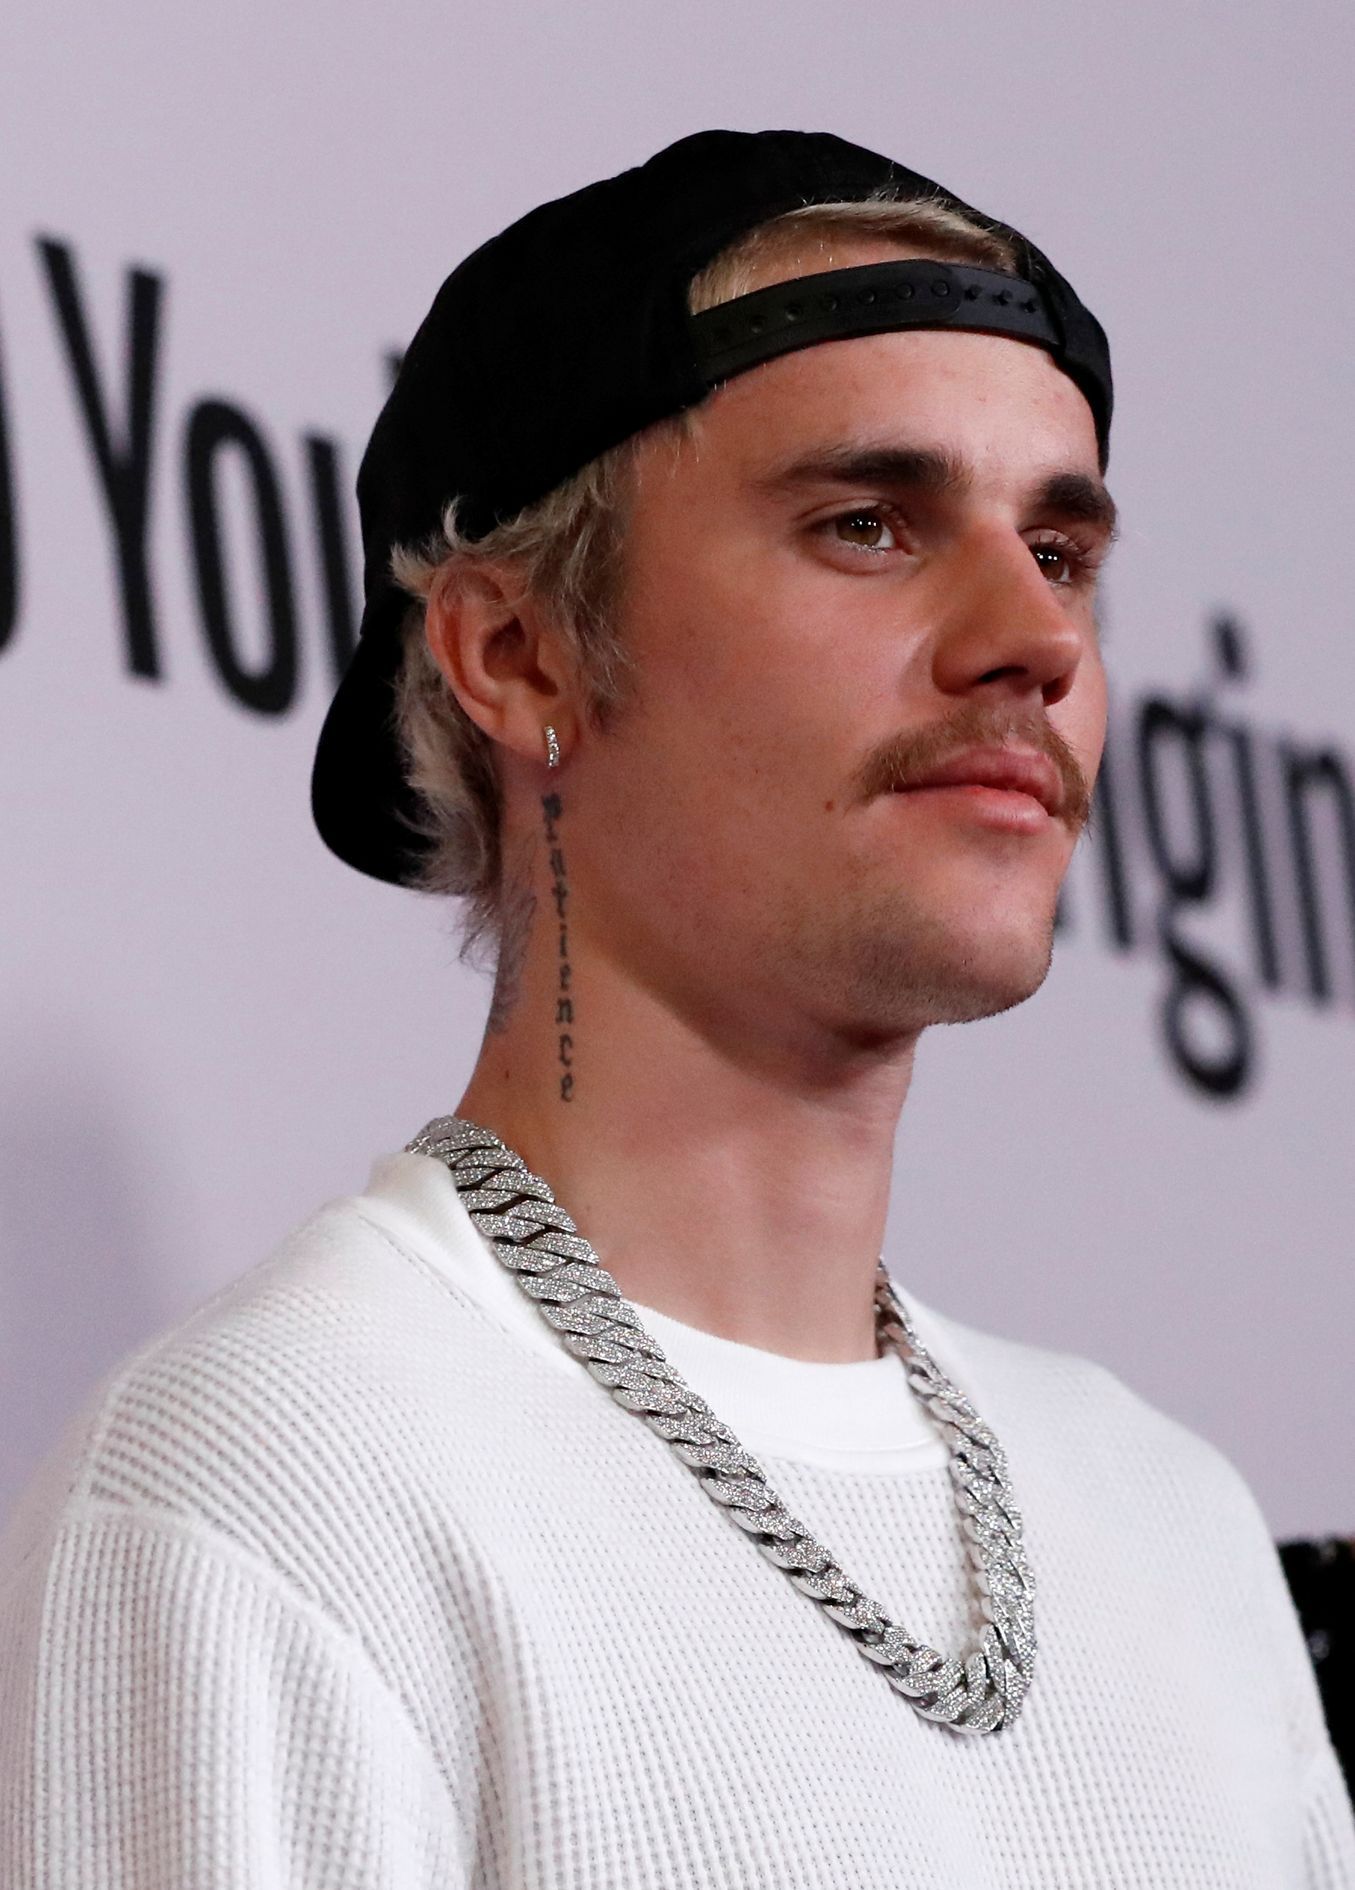 Sau 6 tuần điều trị bệnh liệt cơ mặt, nam ngôi sao Justin Bieber giờ ra sao? - Ảnh 2